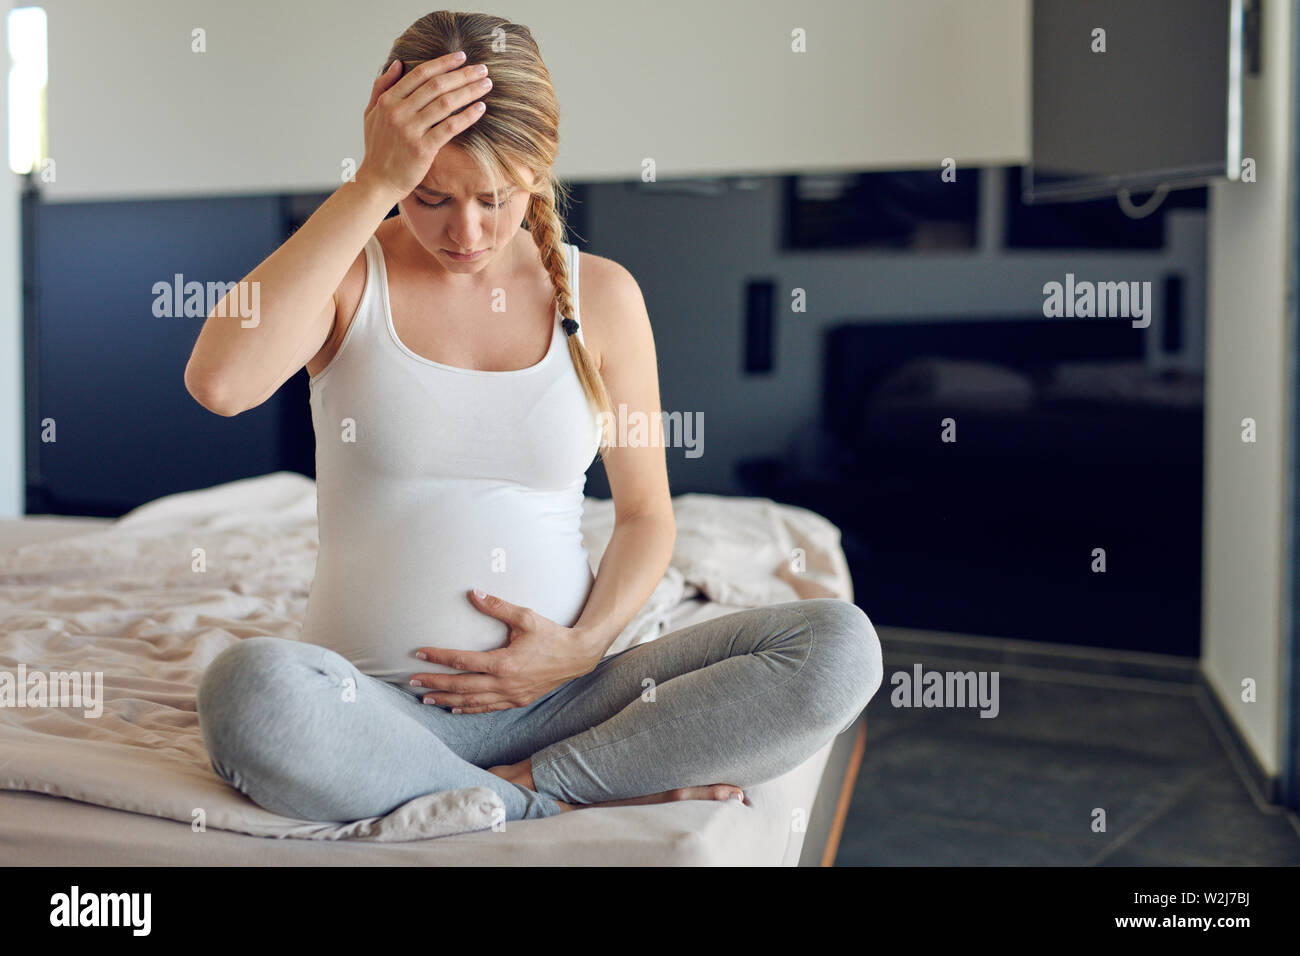 Jeune femme enceinte fortement troublée assis jambes croisées sur un lit berçant son abdomen gonflé et agrippant sa tête regardant vers le bas avec un sérieux ex Banque D'Images